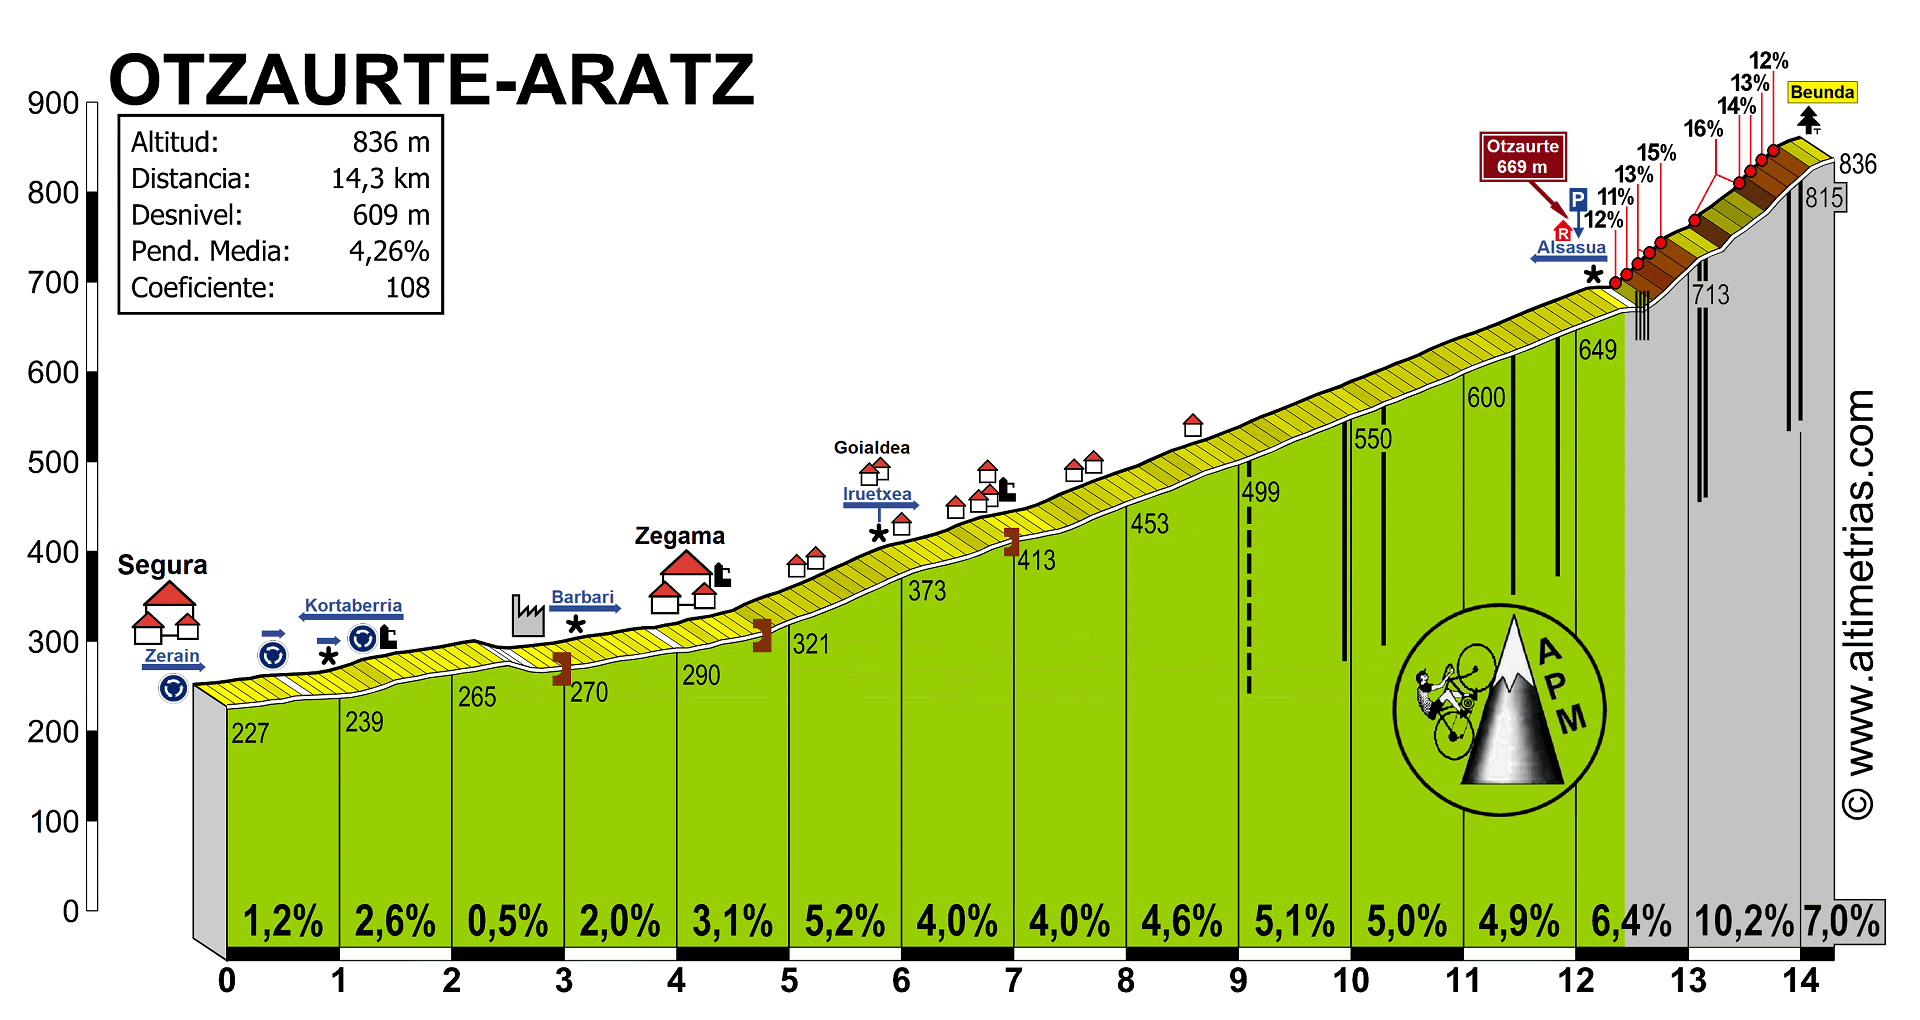 Otzaurte-Aratz